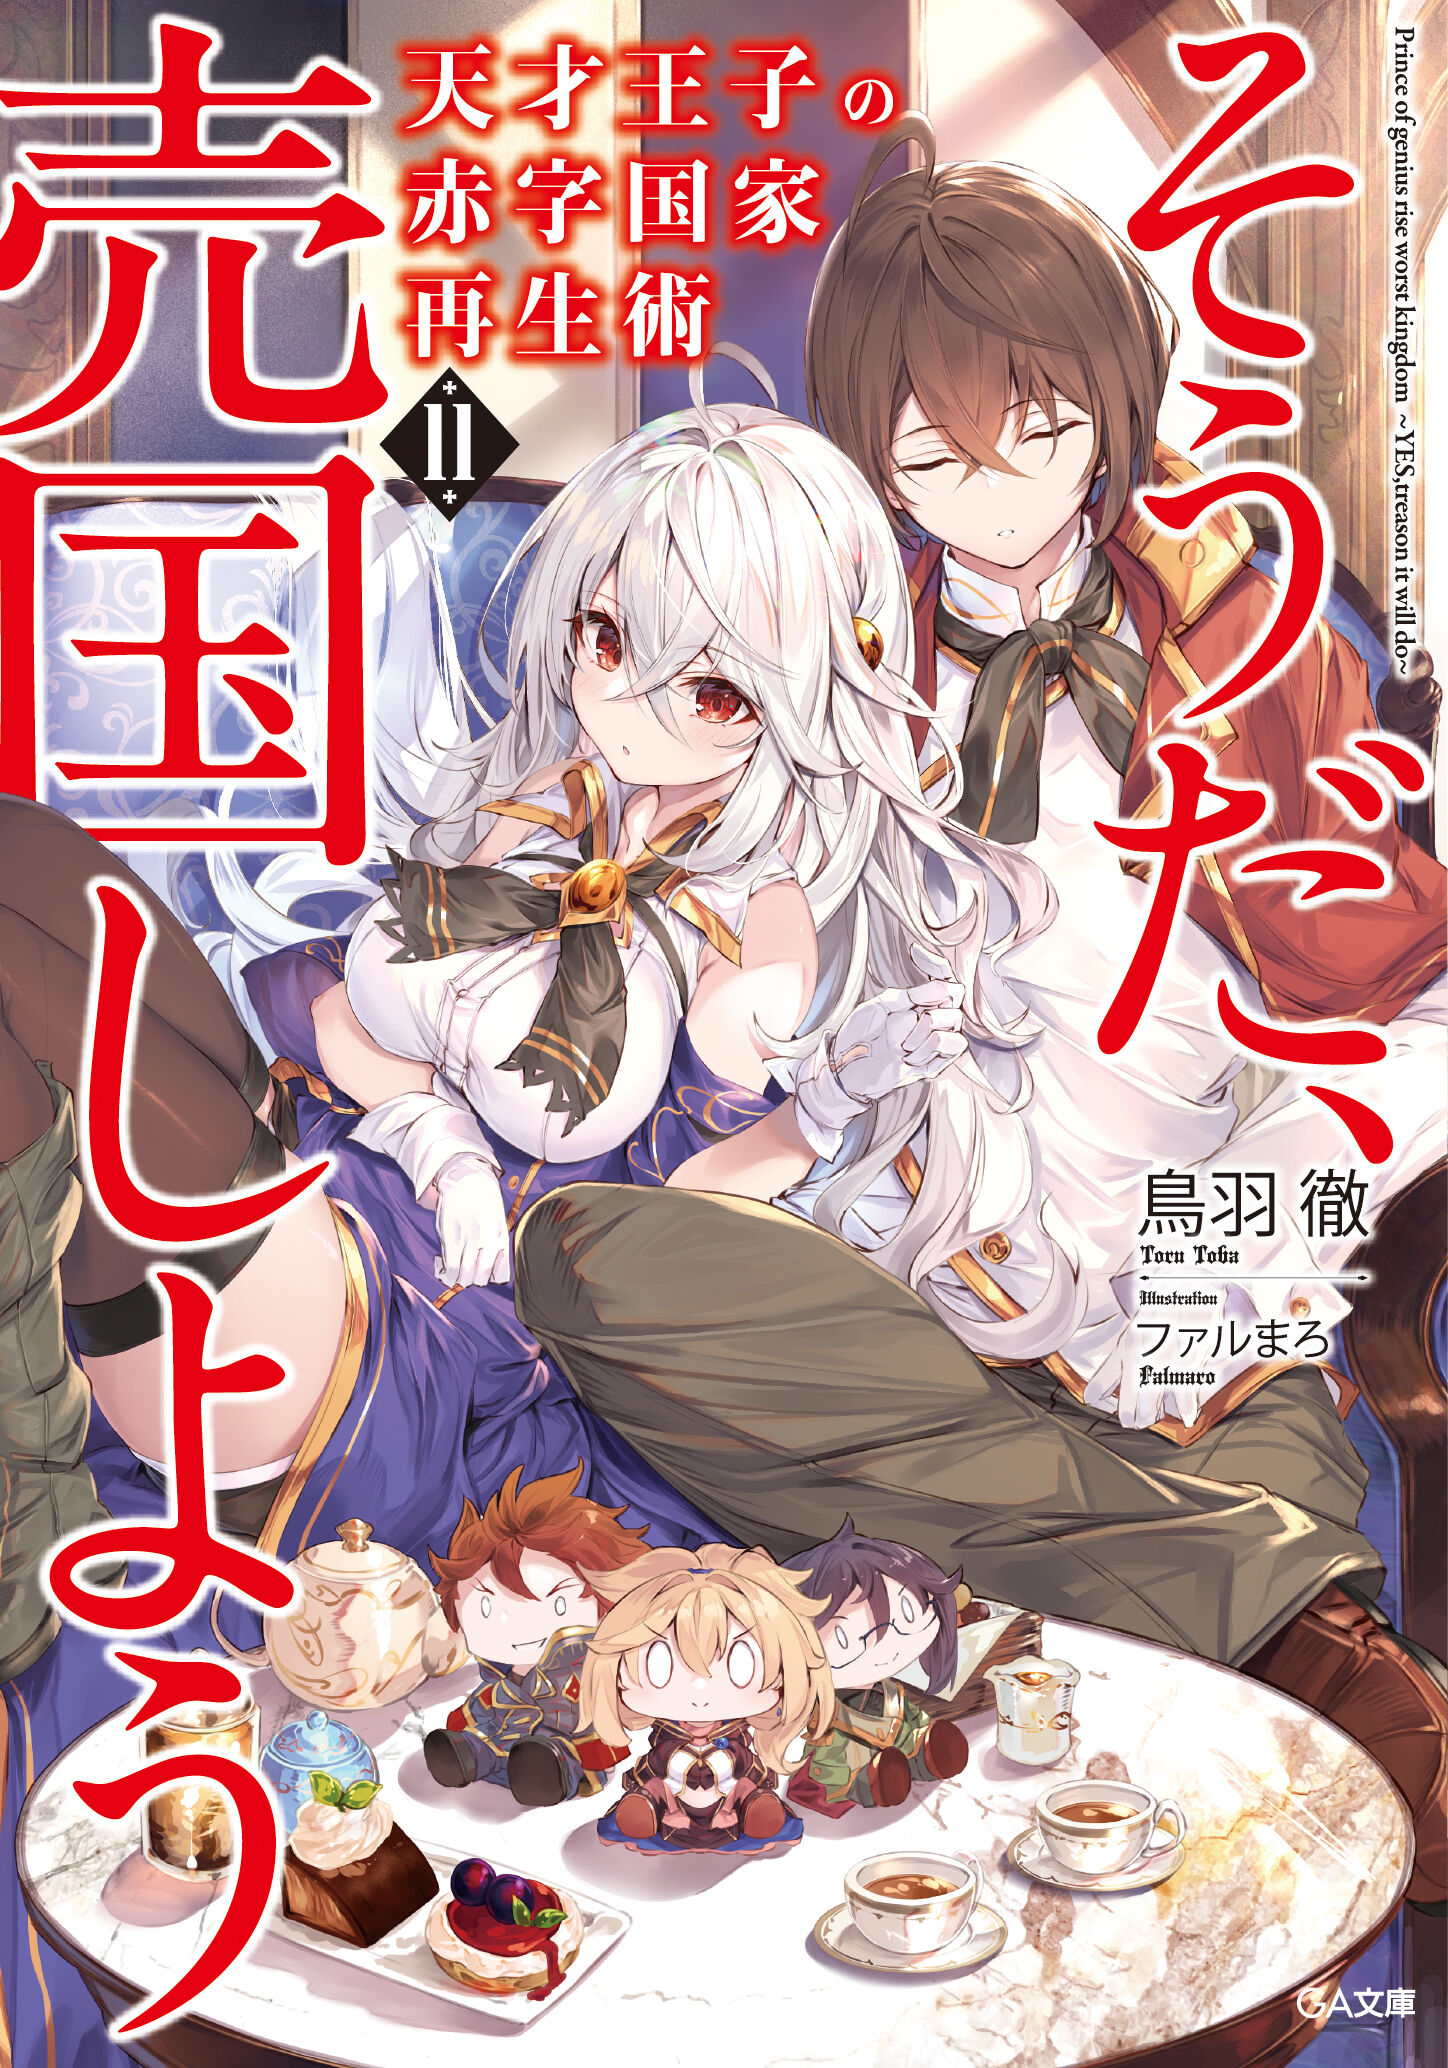 Light Novel Volume 1, Tensai Ouji no Akaji Wiki